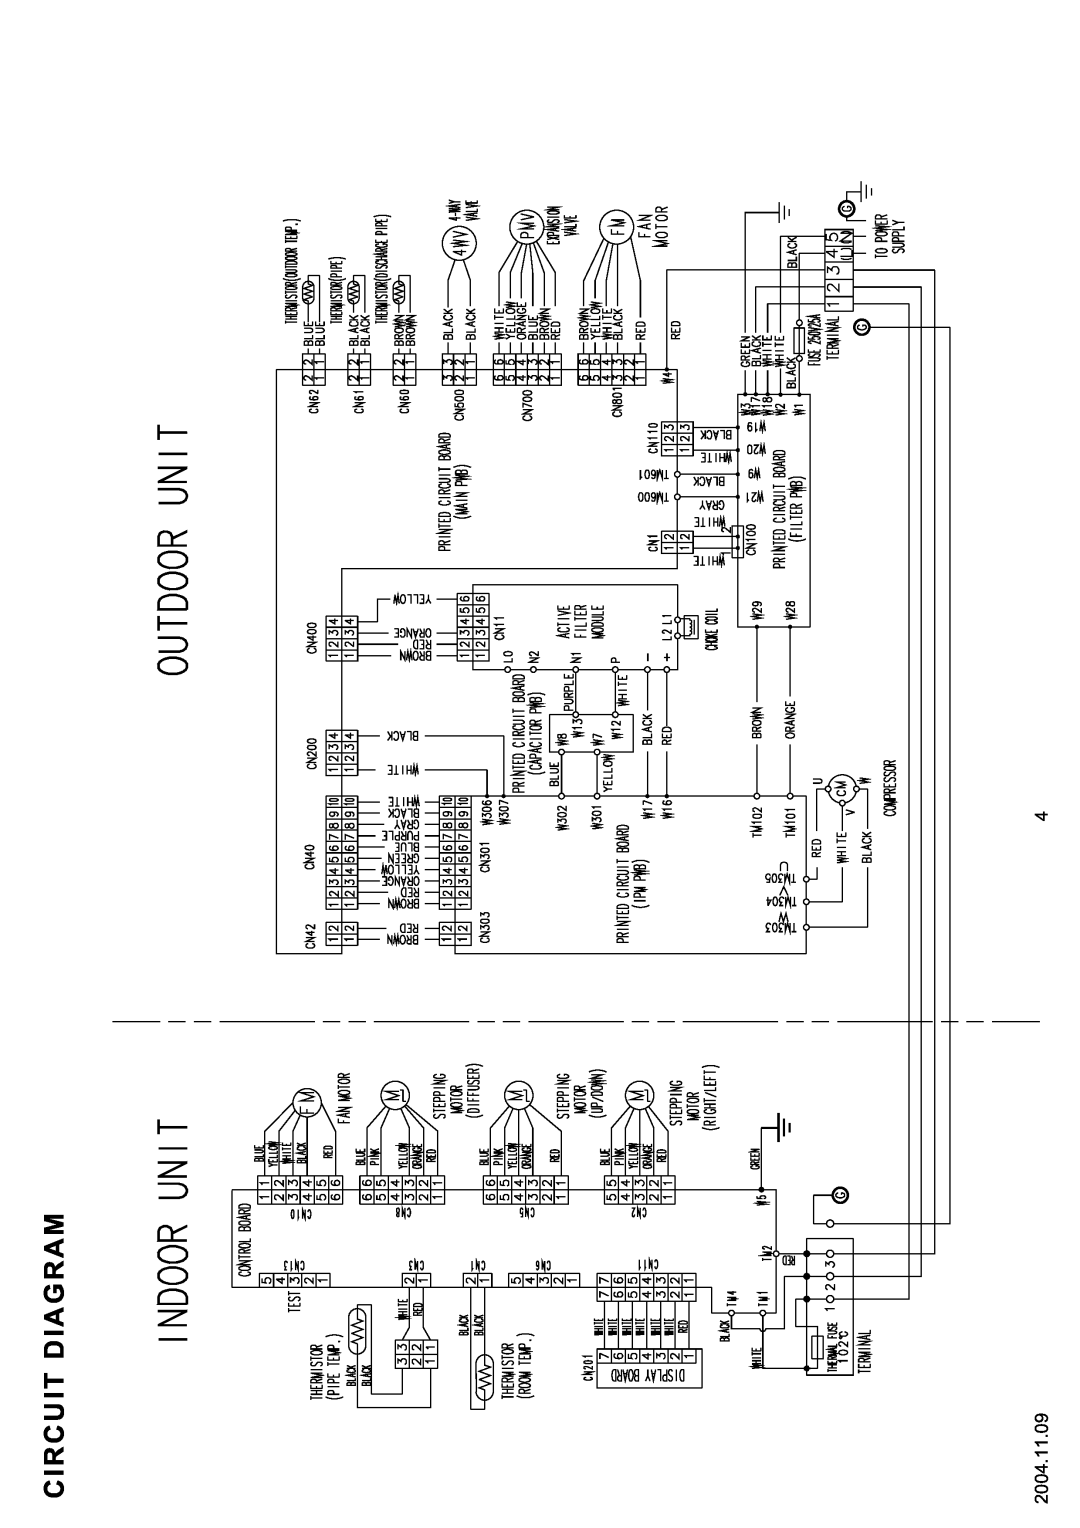 Friedrich MR24Y3F, MW24C3F, MR24C3F specifications Circuit Diagram, 2004.11.09 